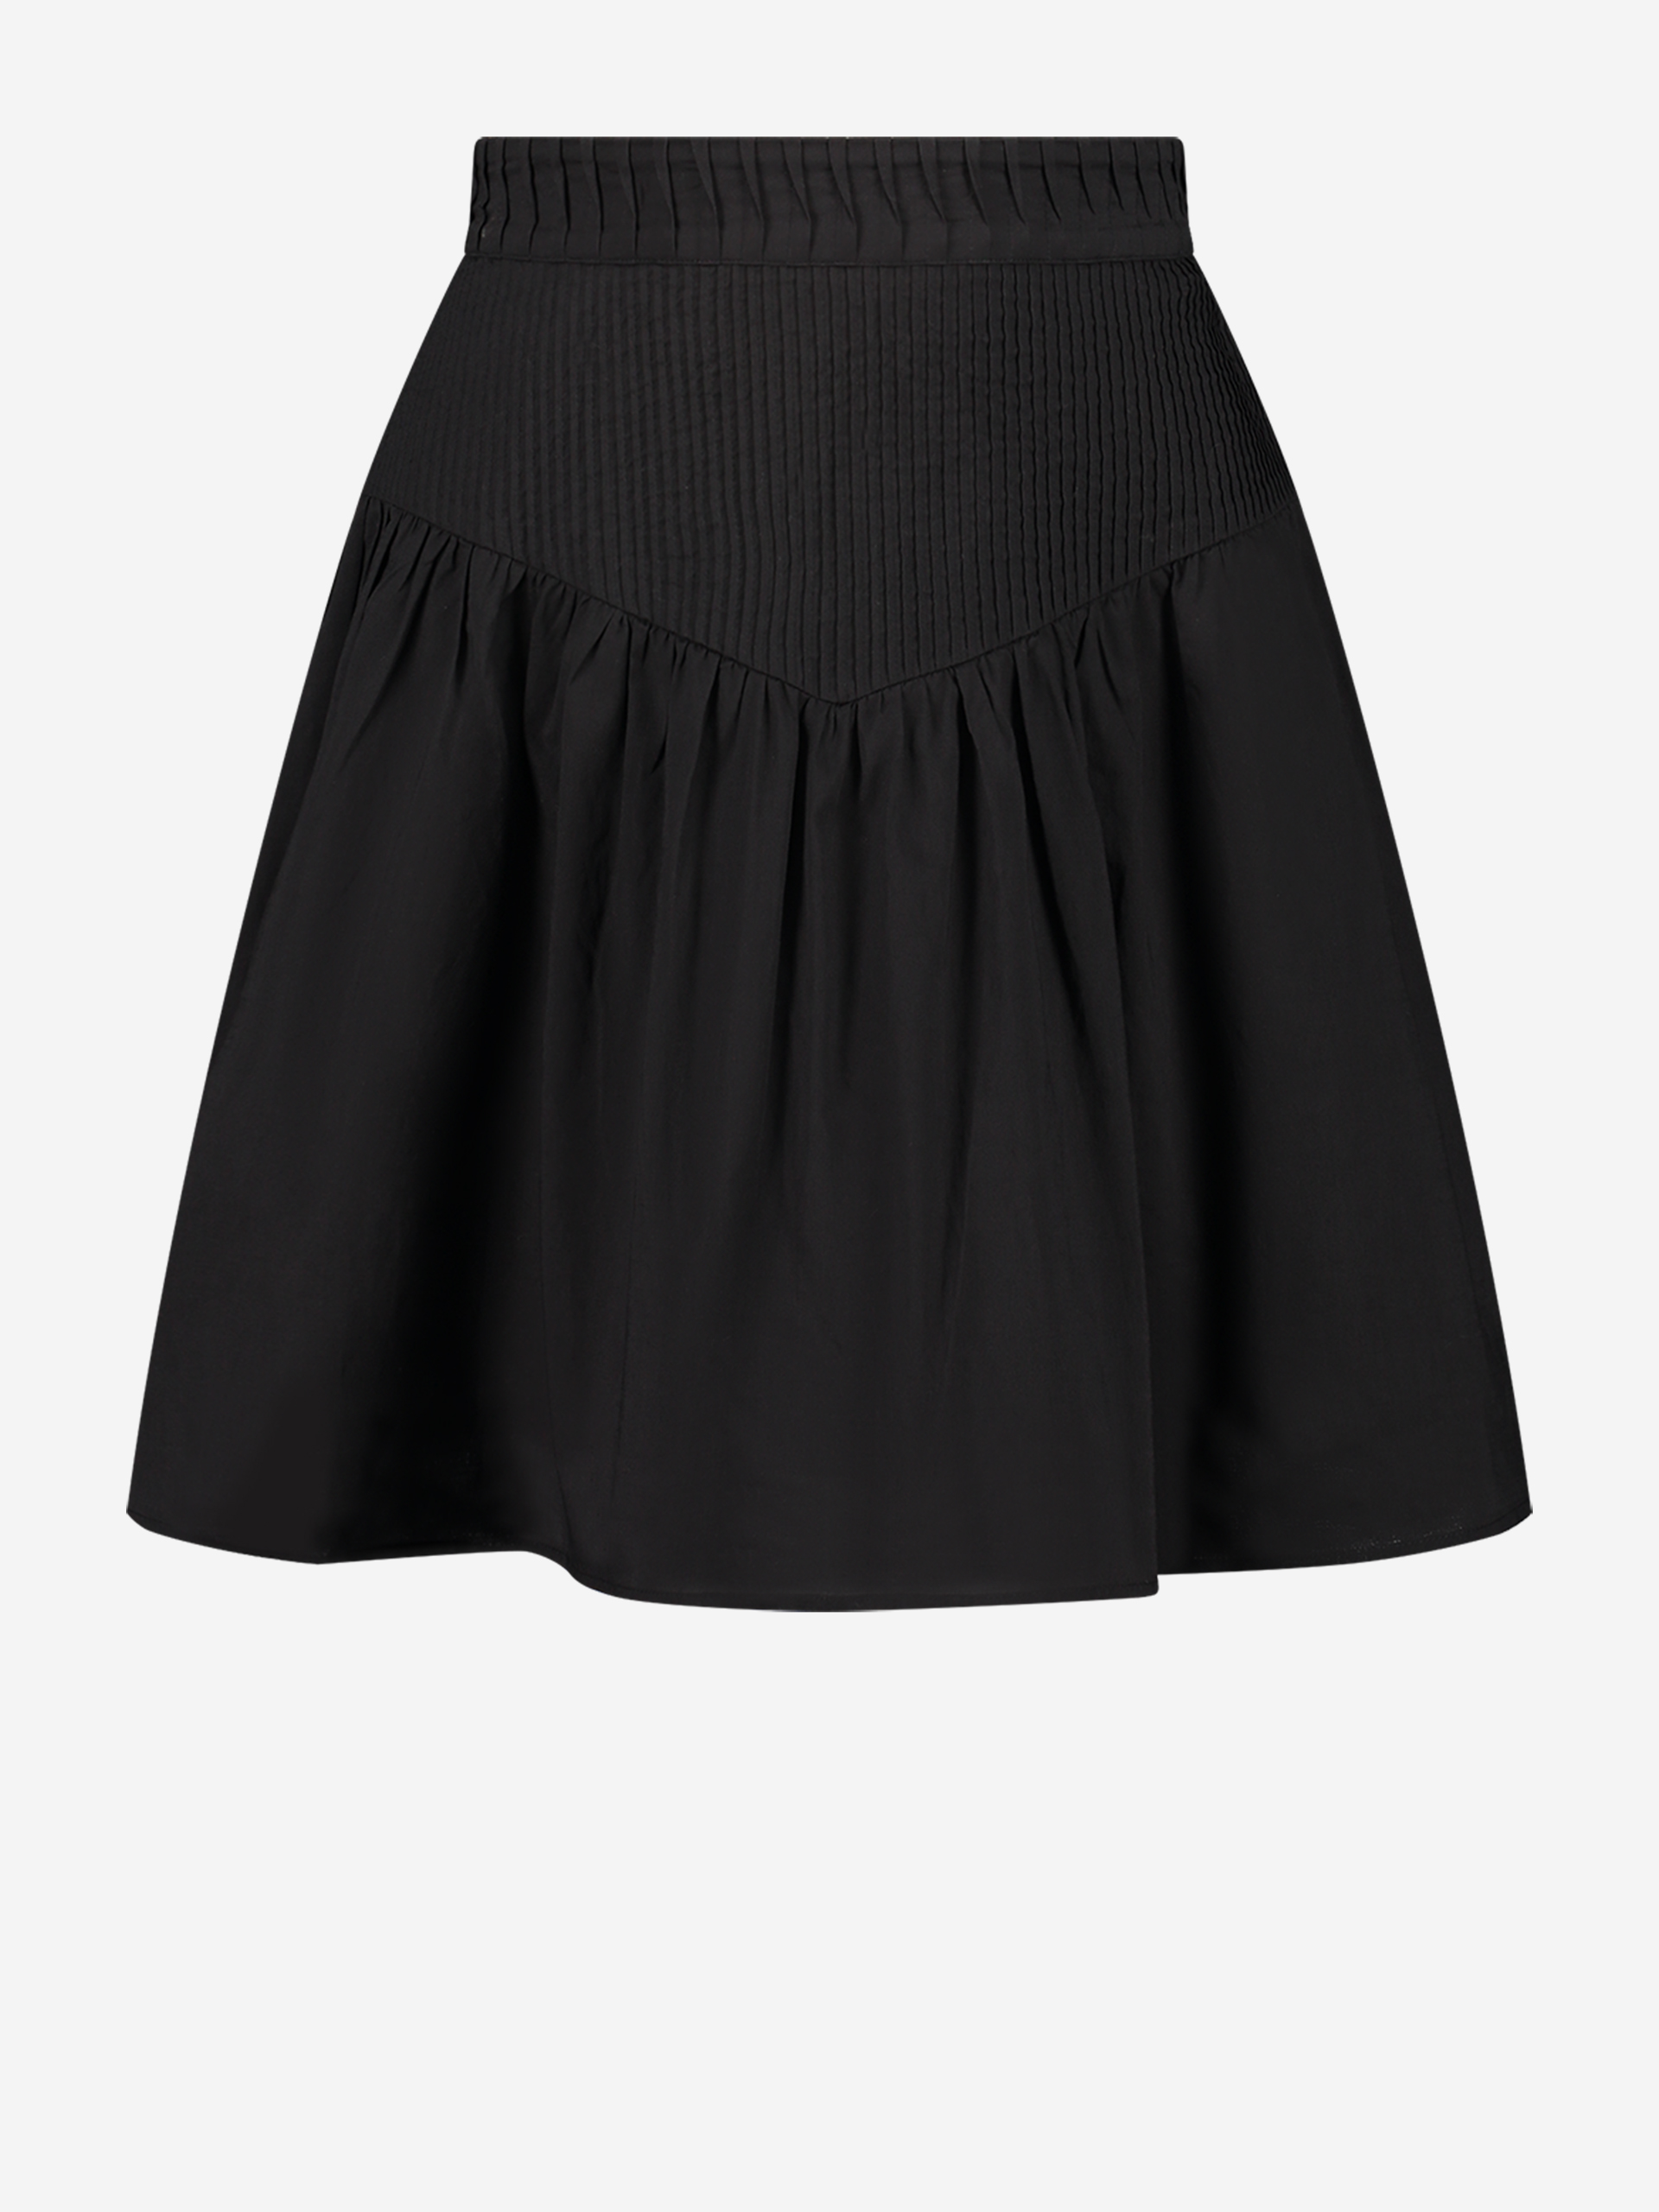 A-line skirt with elastic waistband